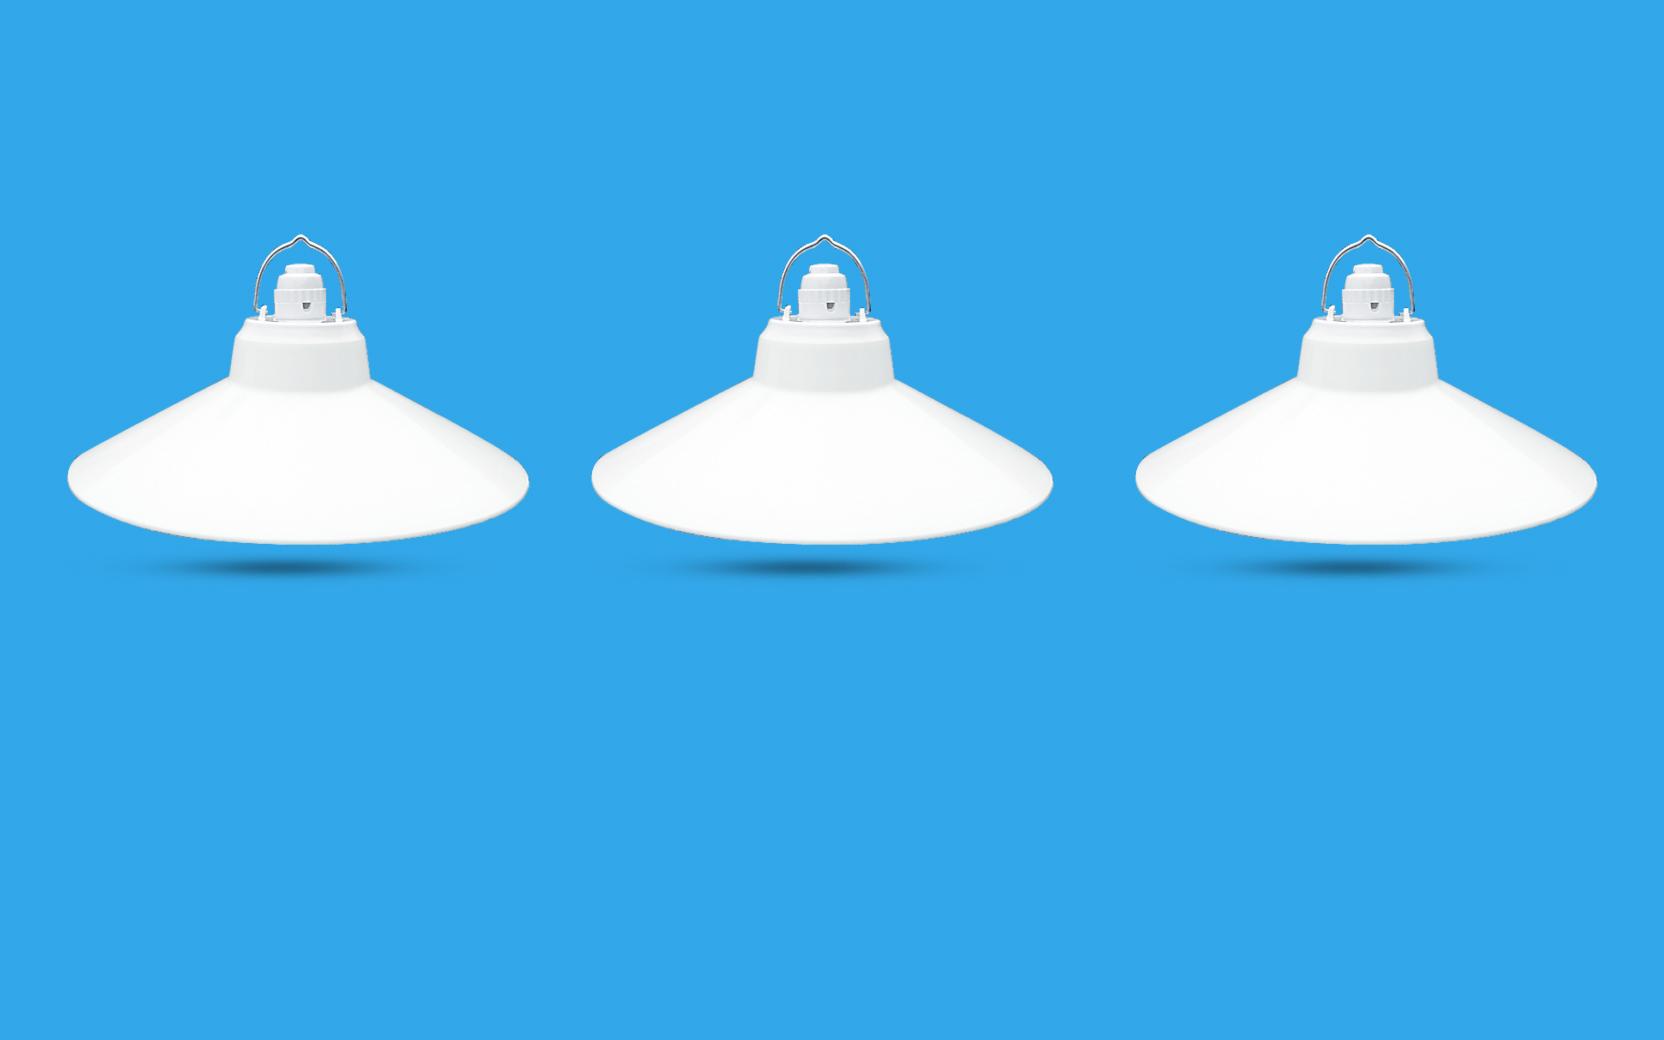 3 Bộ Chao đèn Chóa đèn nhựa trắng ngoài trời 25cm và đui E27 Kín nước